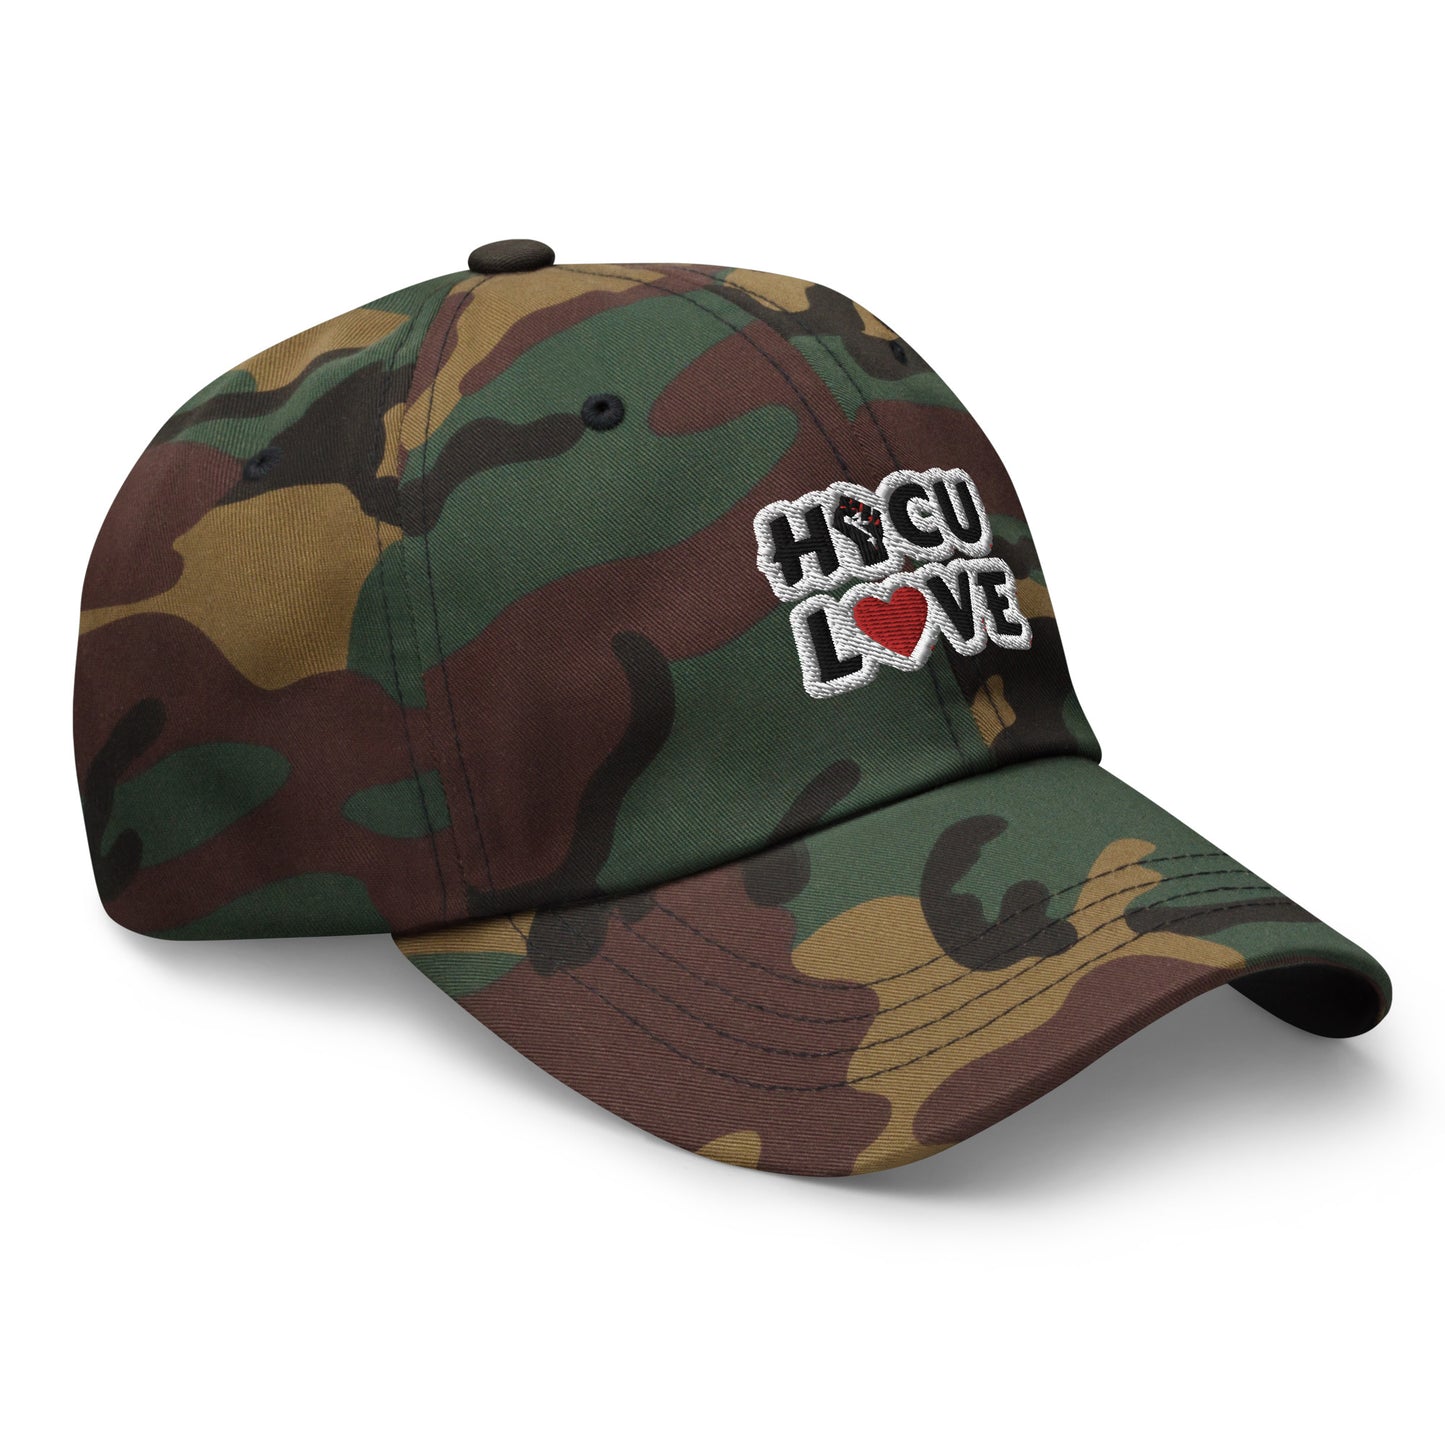 HBCU LOVE Hat